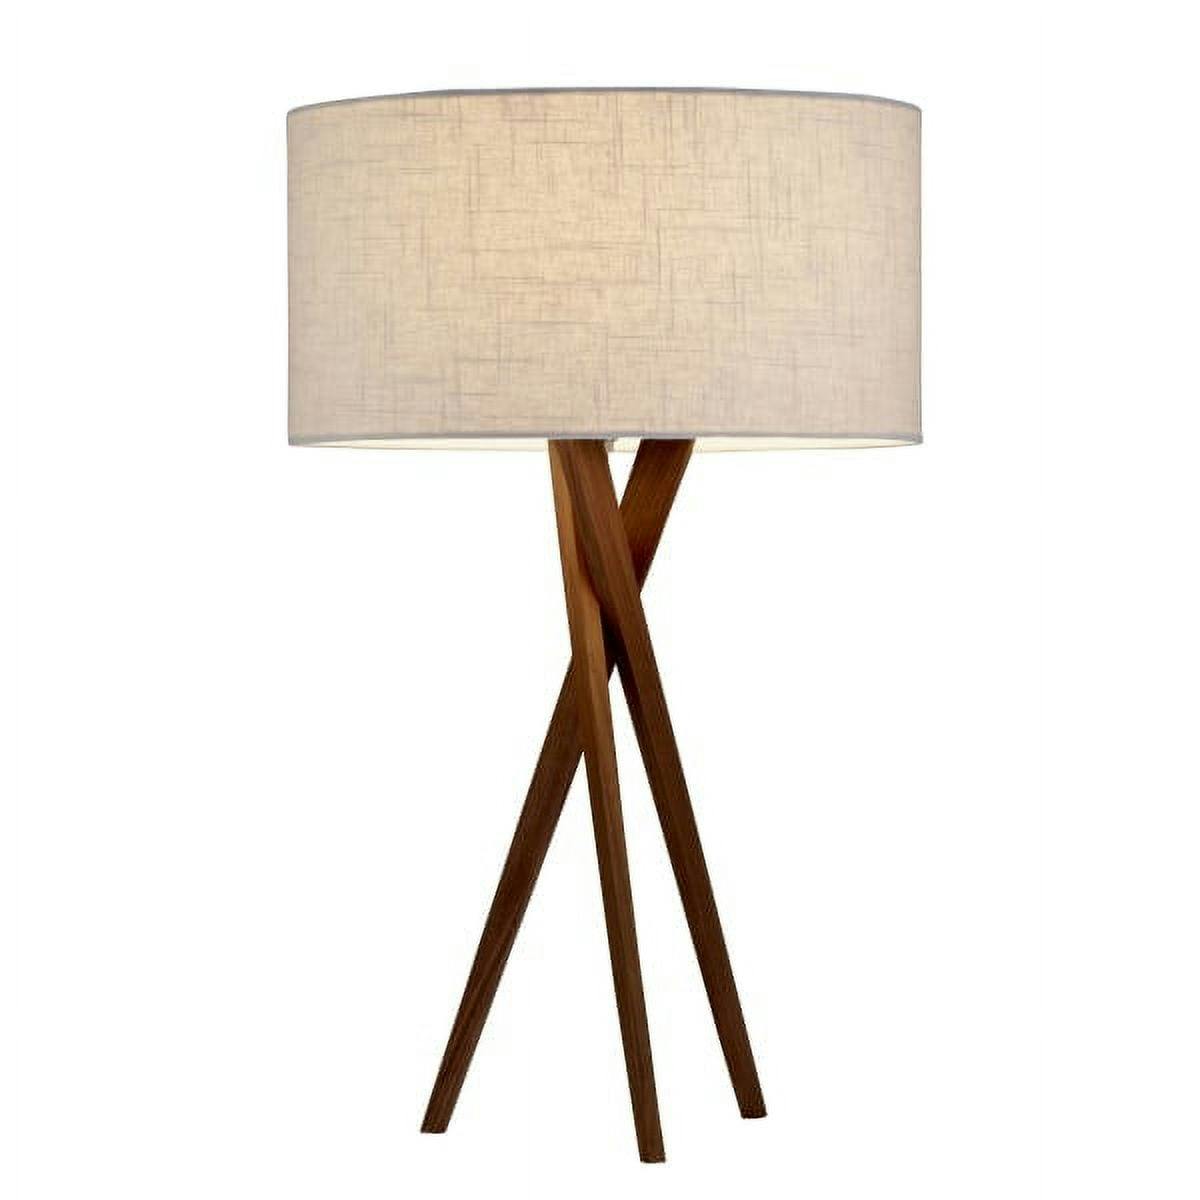 Harcourt 29.5" Light Walnut Solid Wood Tripod Lamp